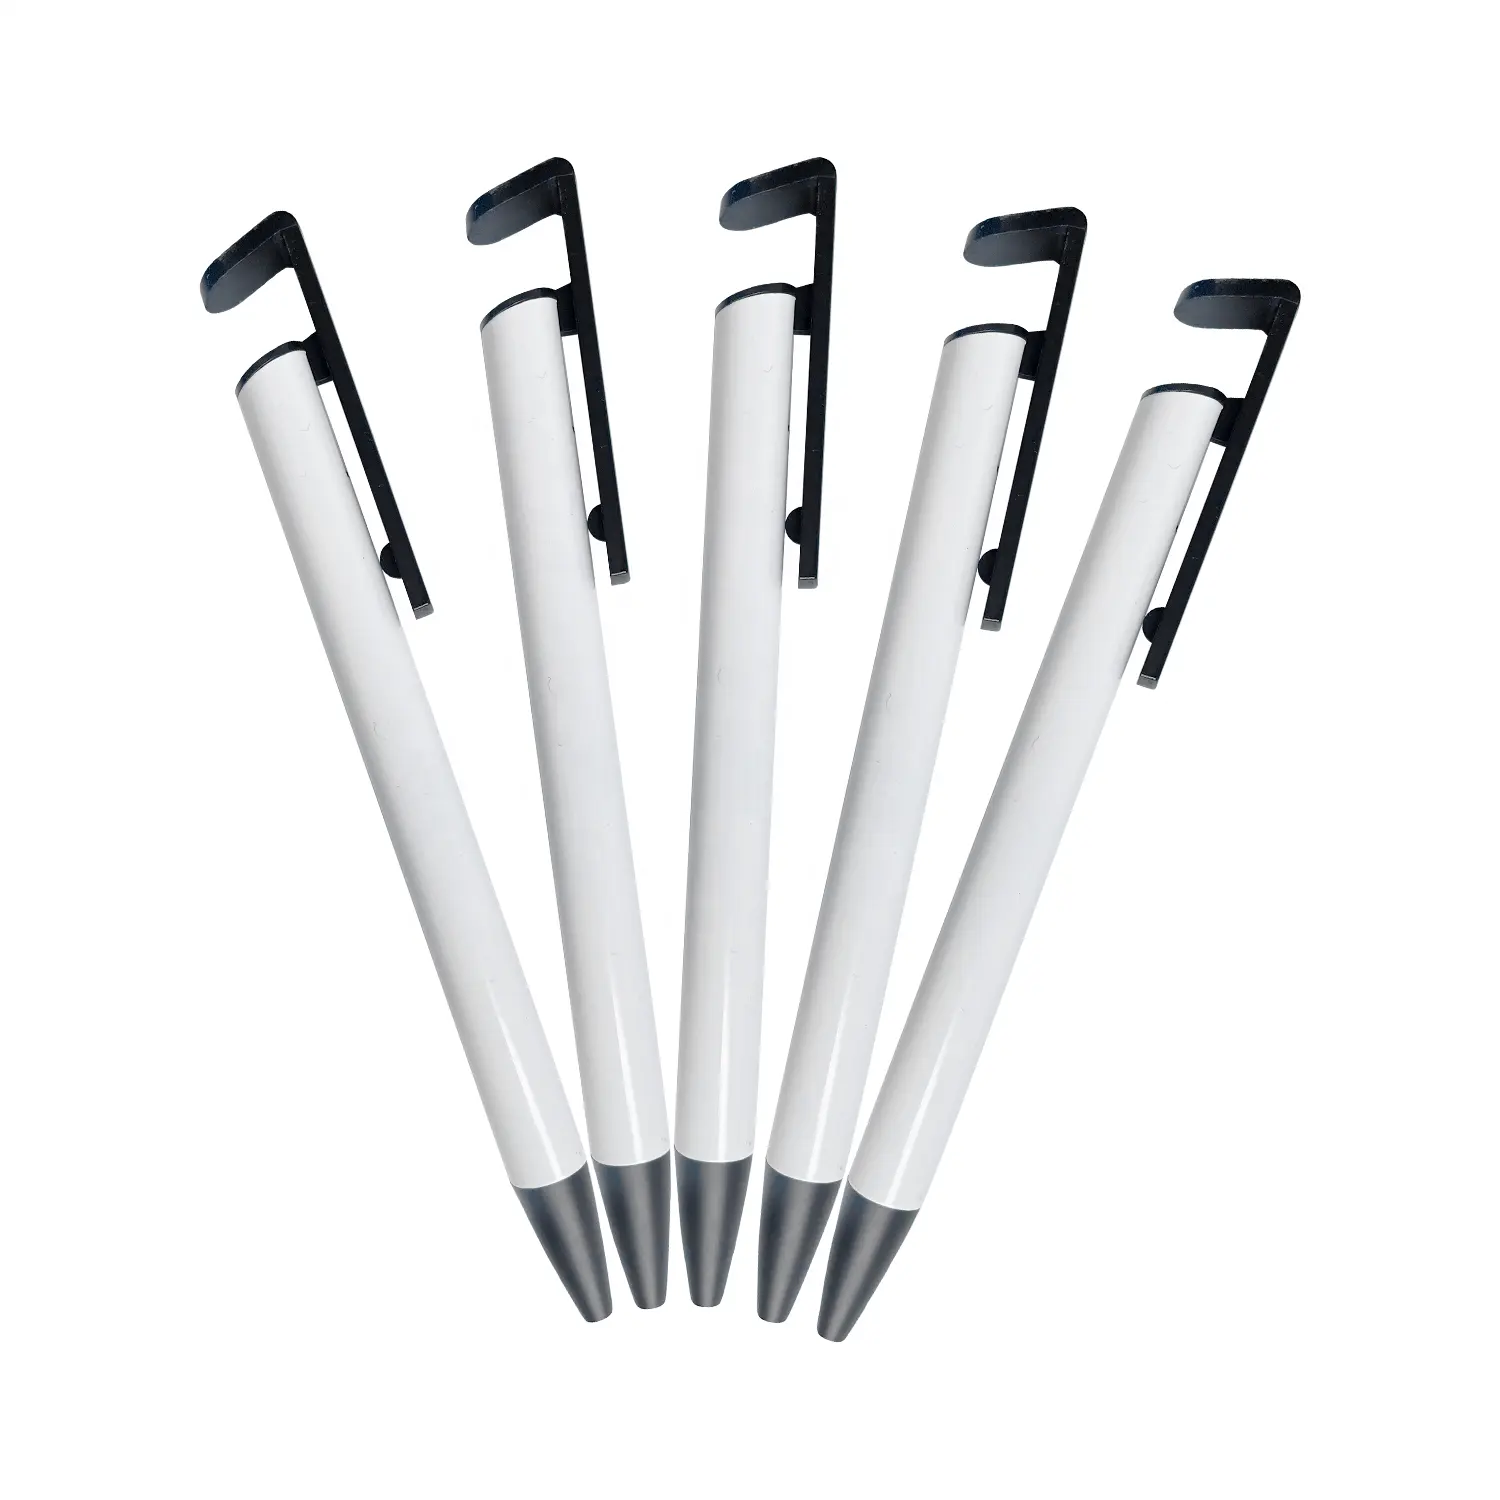 قلم حبر QUAFF للبيع بالجملة قلم حبر جاف معدني لنقل الحرارة يمكن وضع شعارك عليه